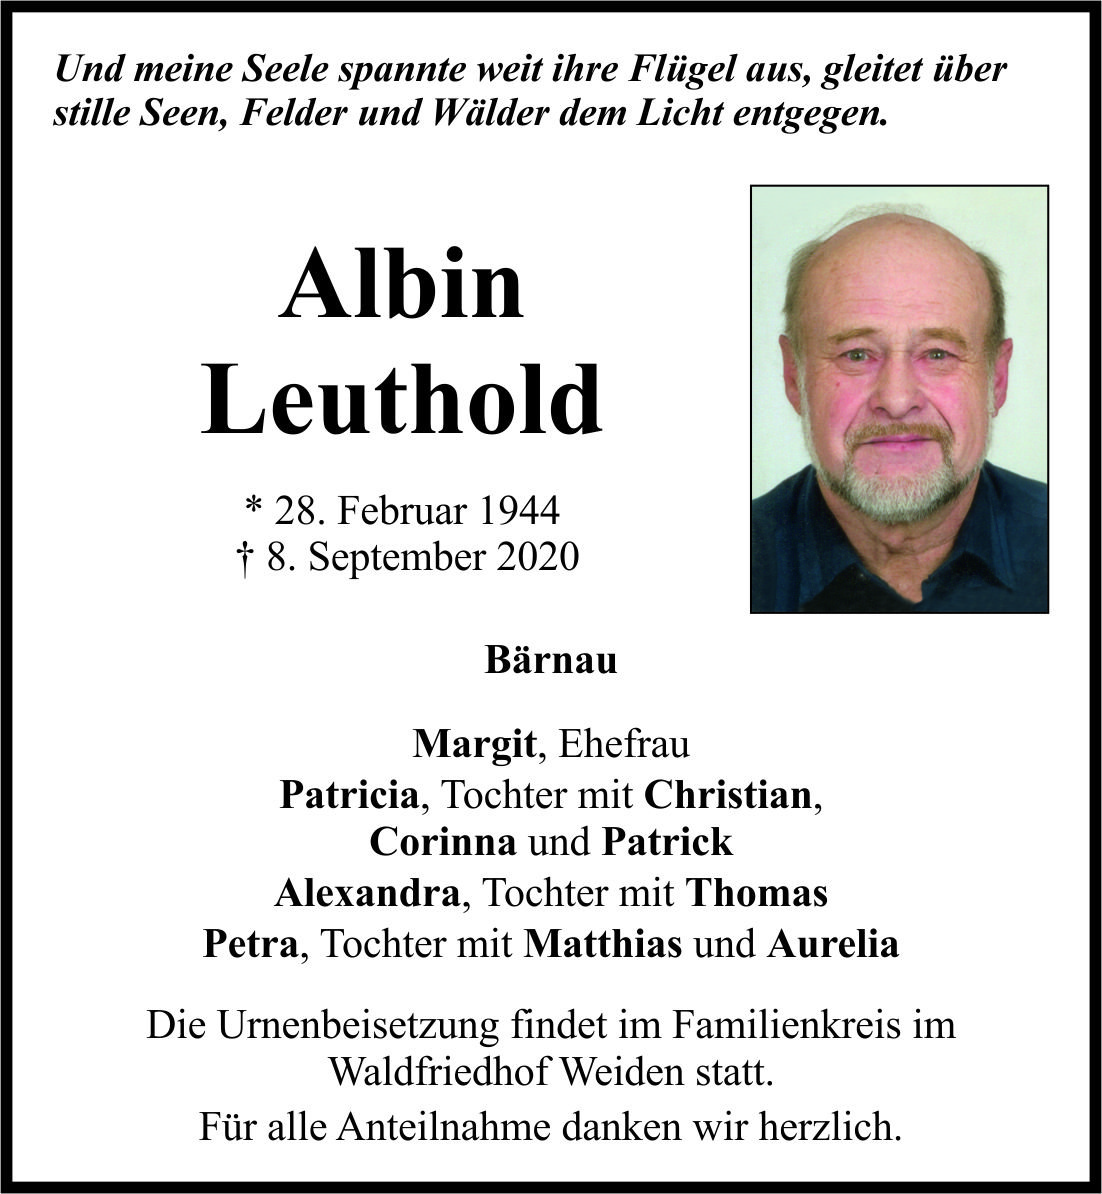 Traueranzeige Albin Leuthold, Bärnau